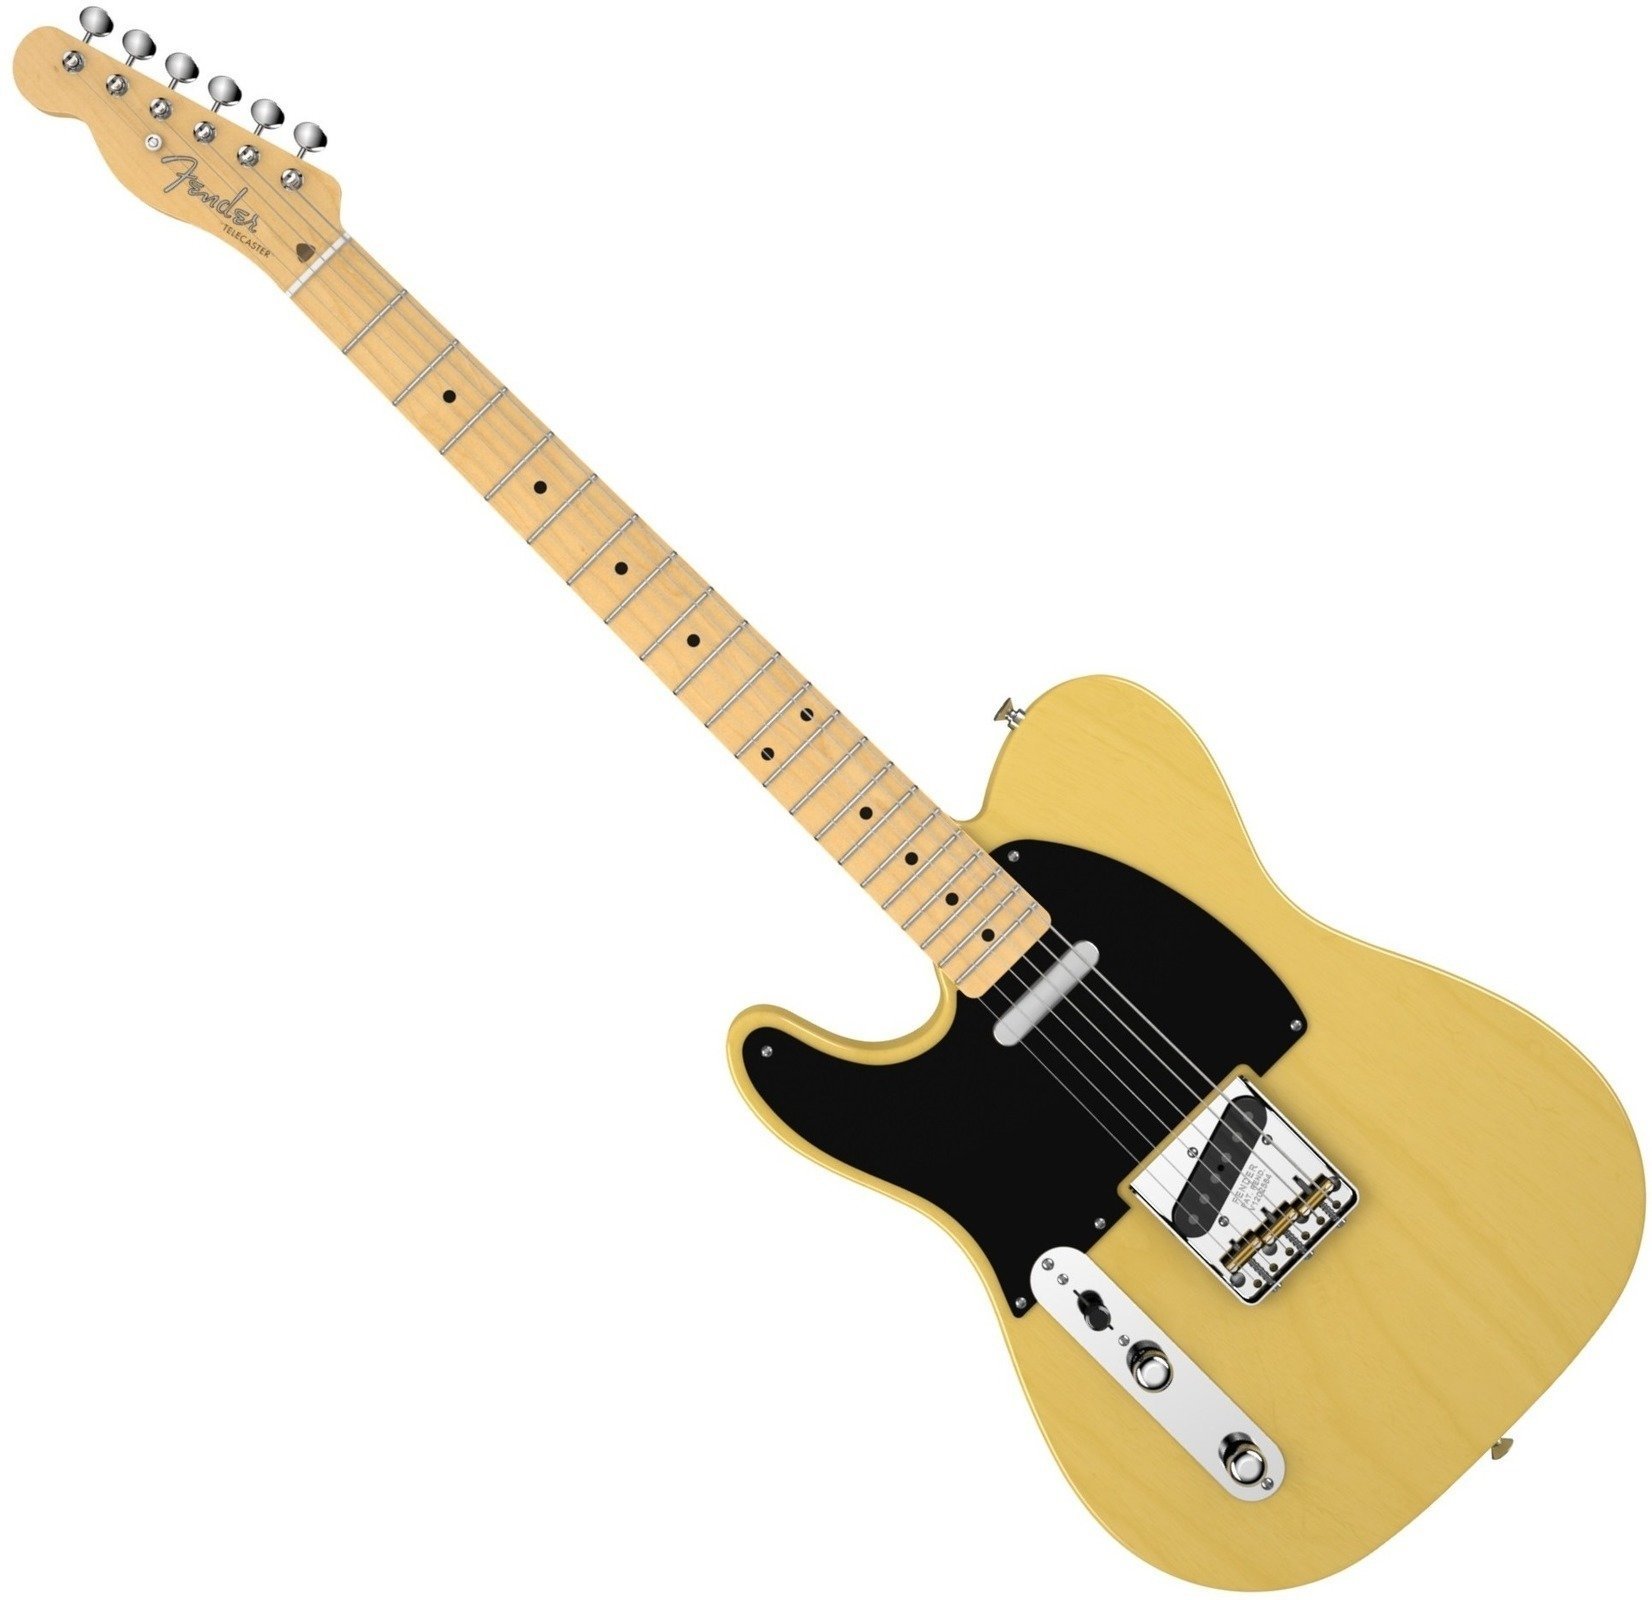 Ηλεκτρική Κιθάρα για Αριστερόχειρες Fender American Vintage '52 Telecaster LeftHanded, Maple Fingerboard, Butterscotch Blonde